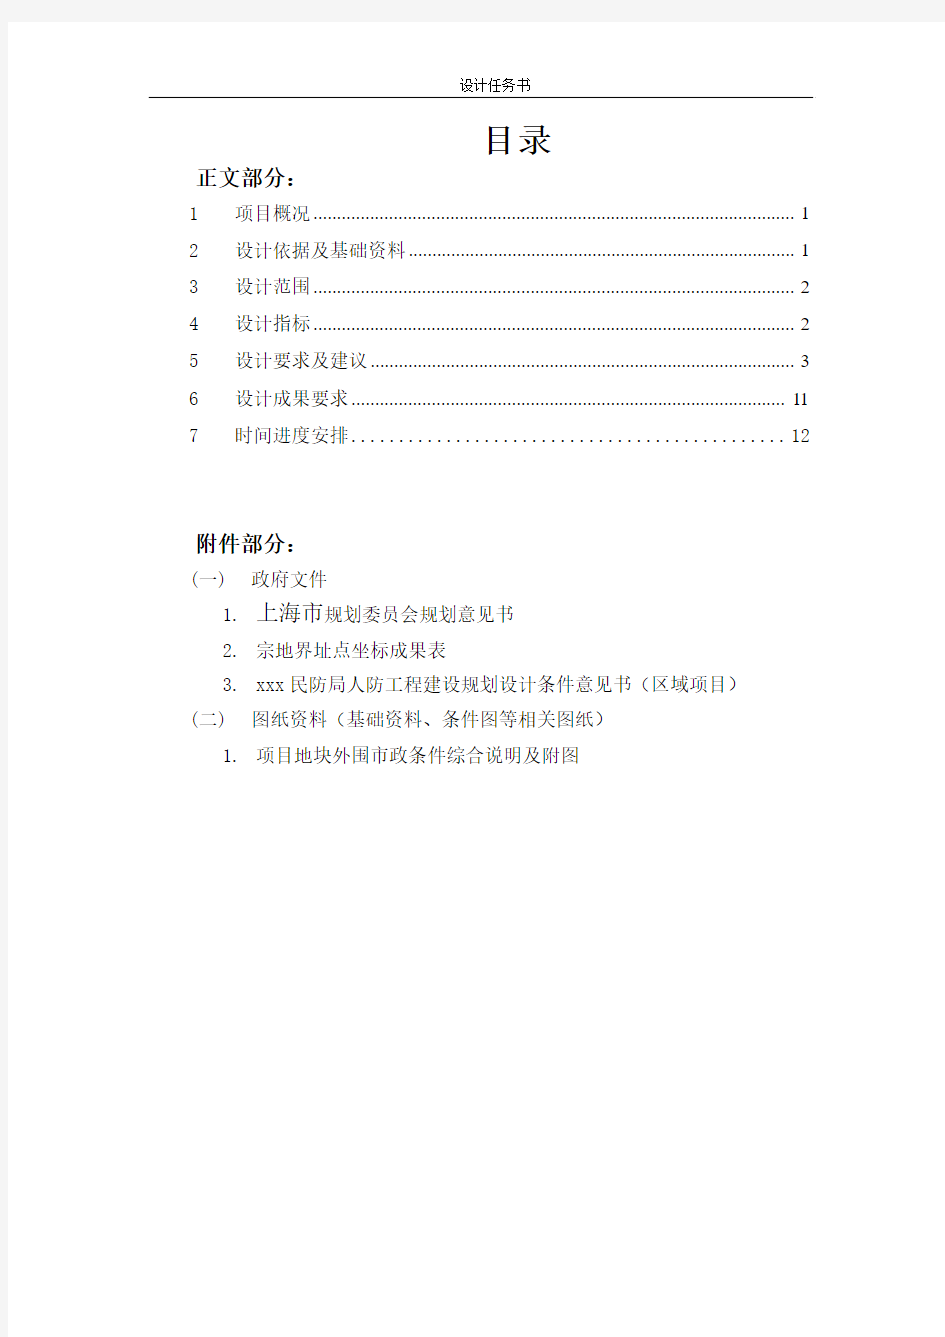 上海市规划方案设计任务书11.11